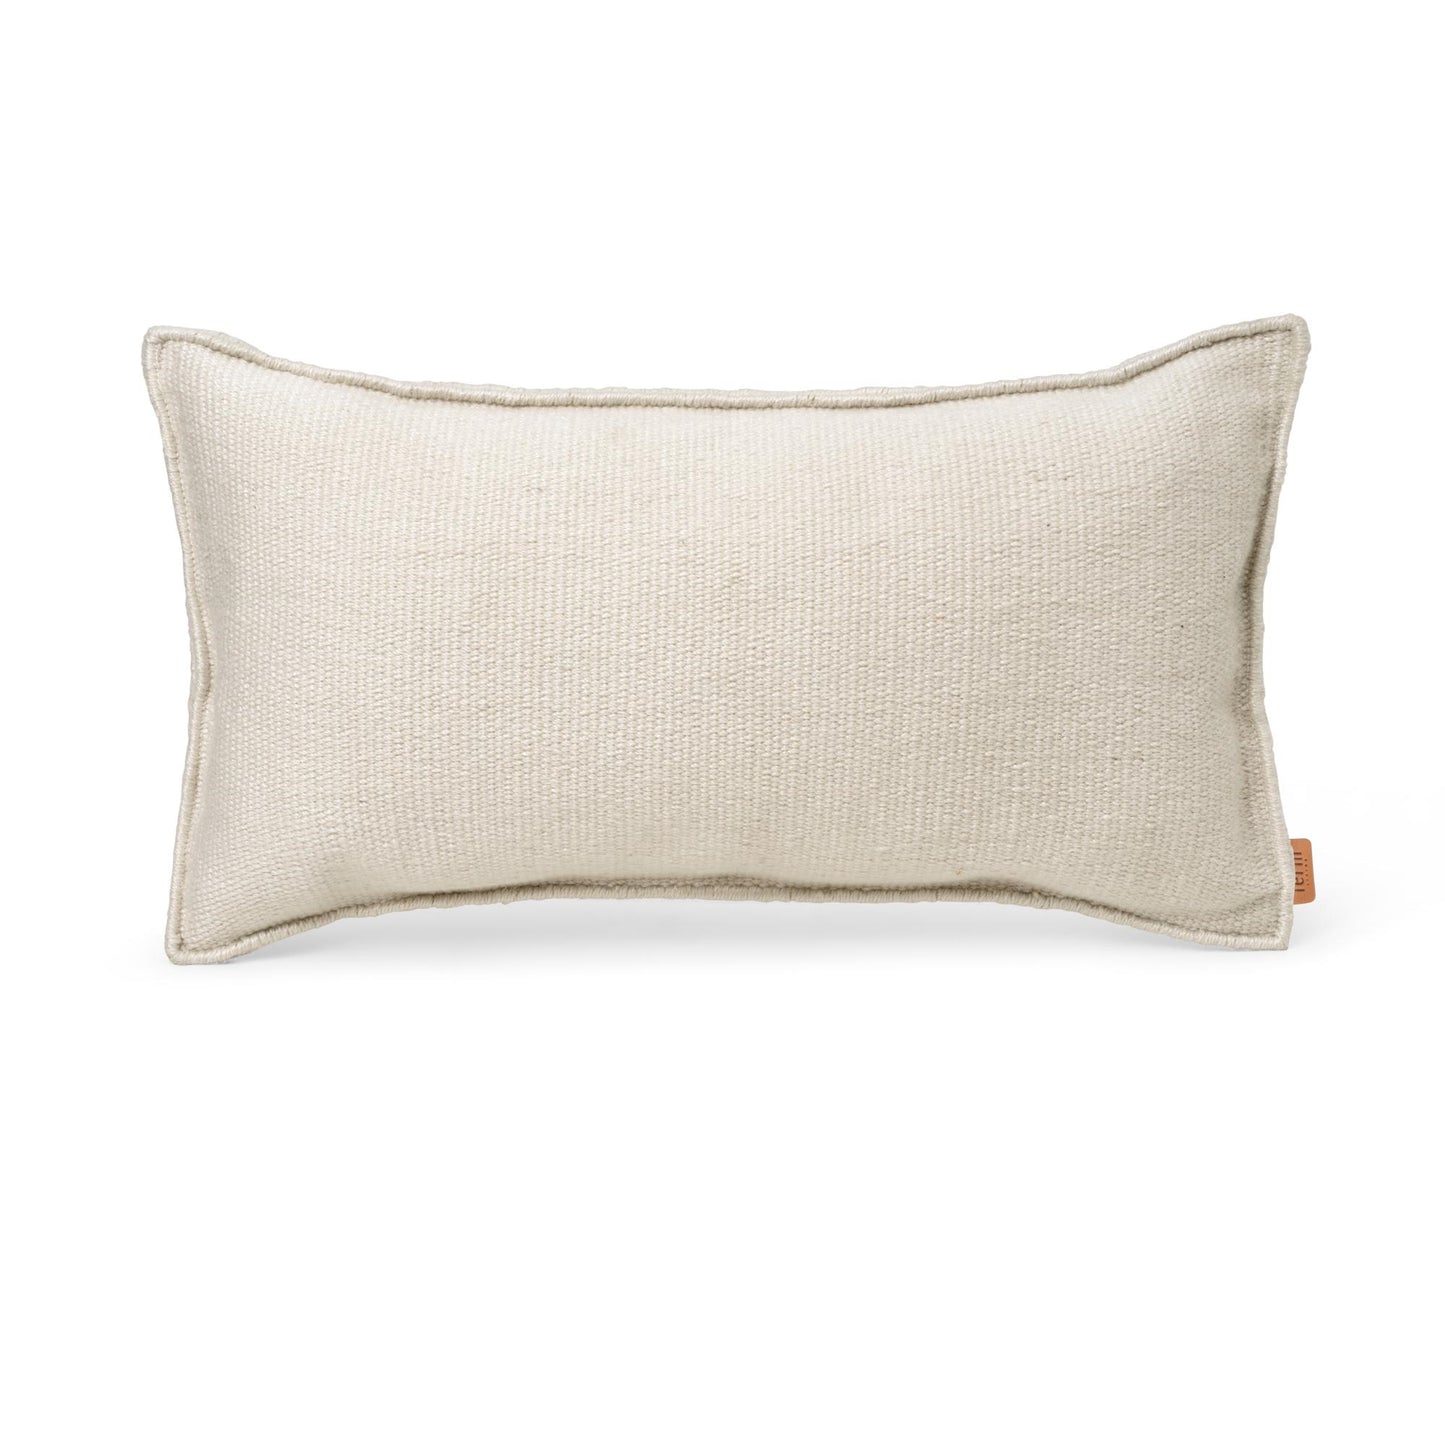 Desert Pillow by Ferm Living #Off white